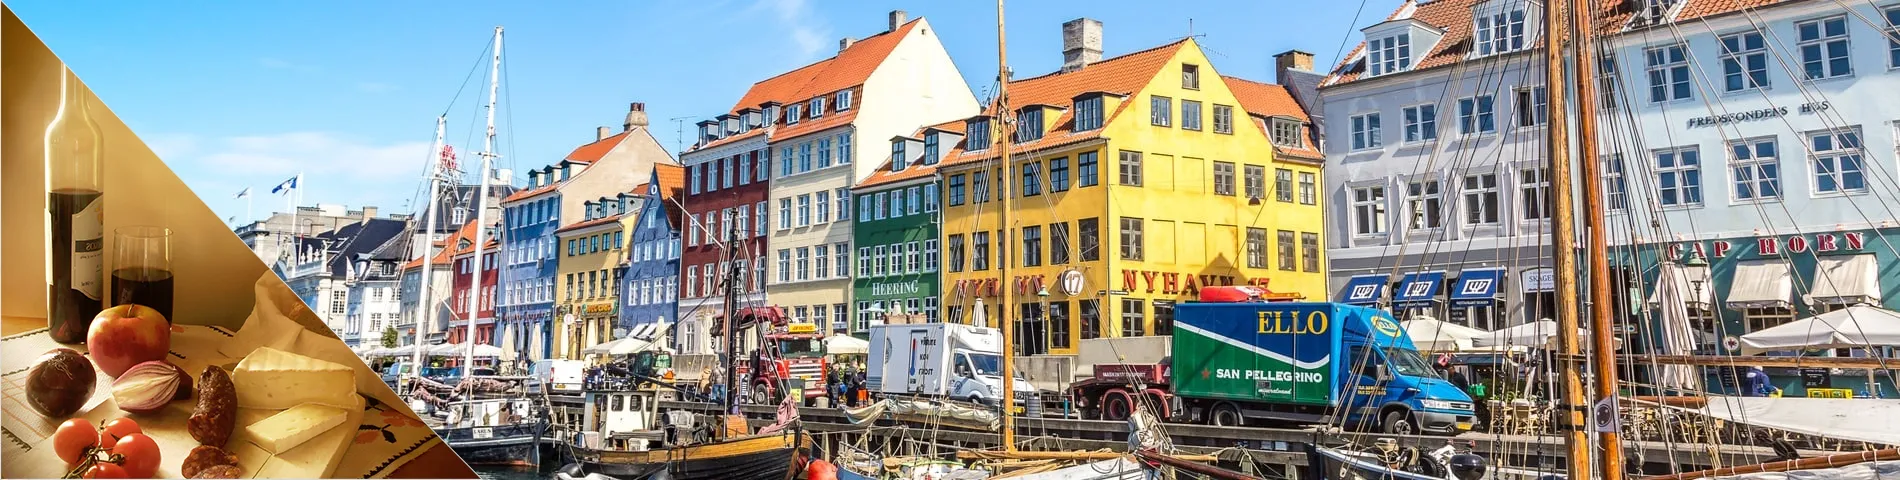 Kööpenhamina - Tanska & kulttuuri